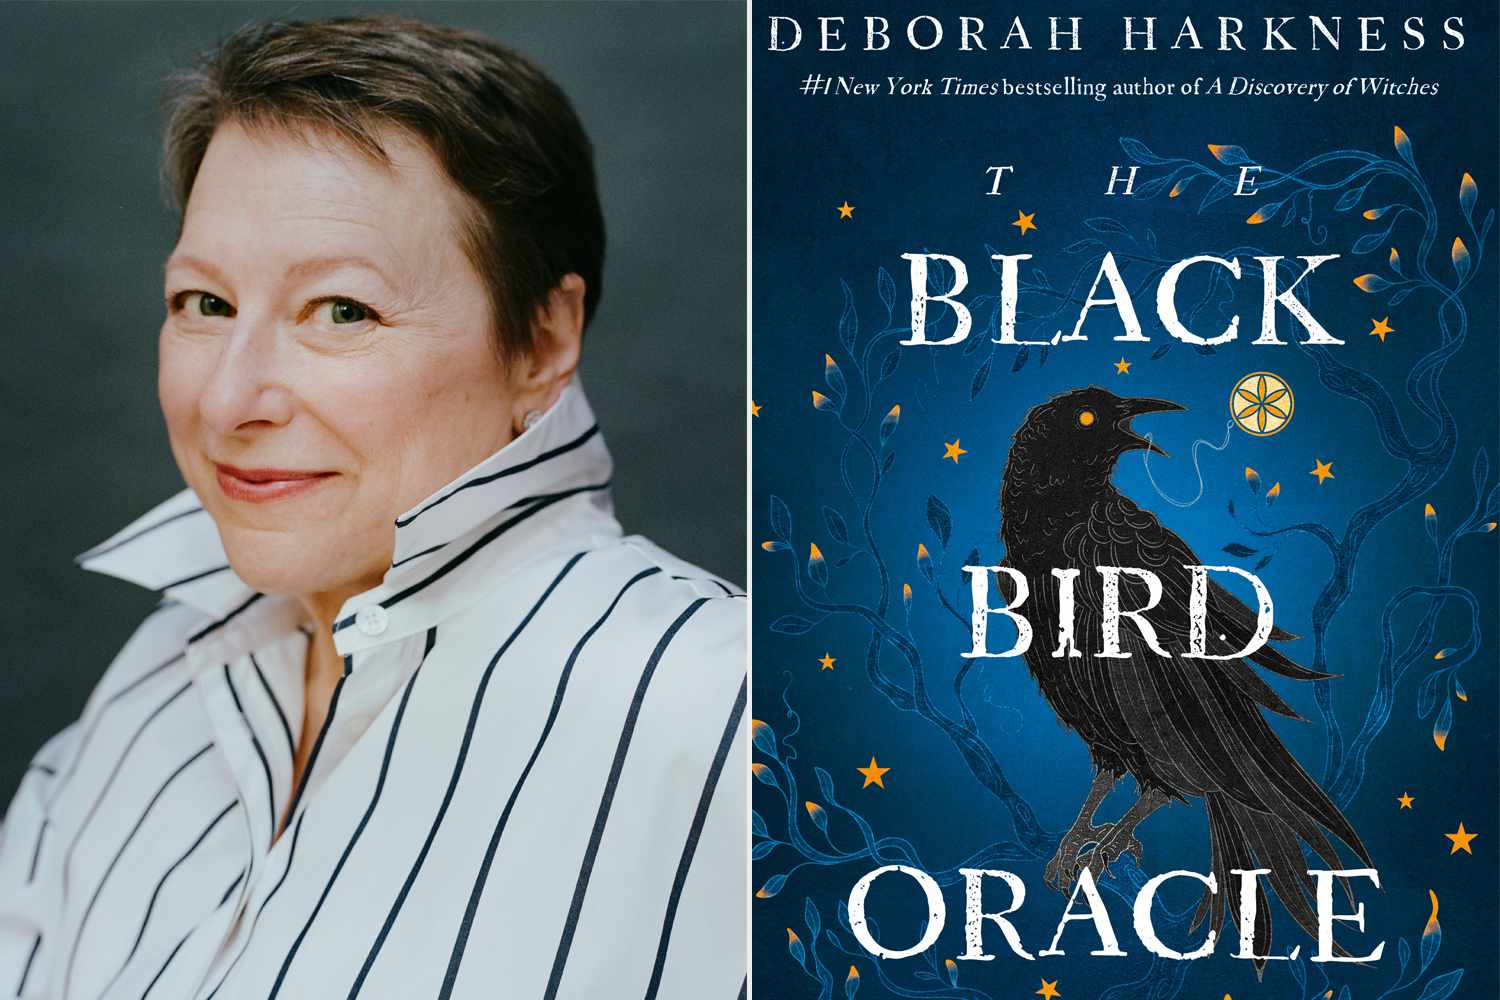 Read an exclusive excerpt from Deborah Harkness' 'The Black Bird Oracle'